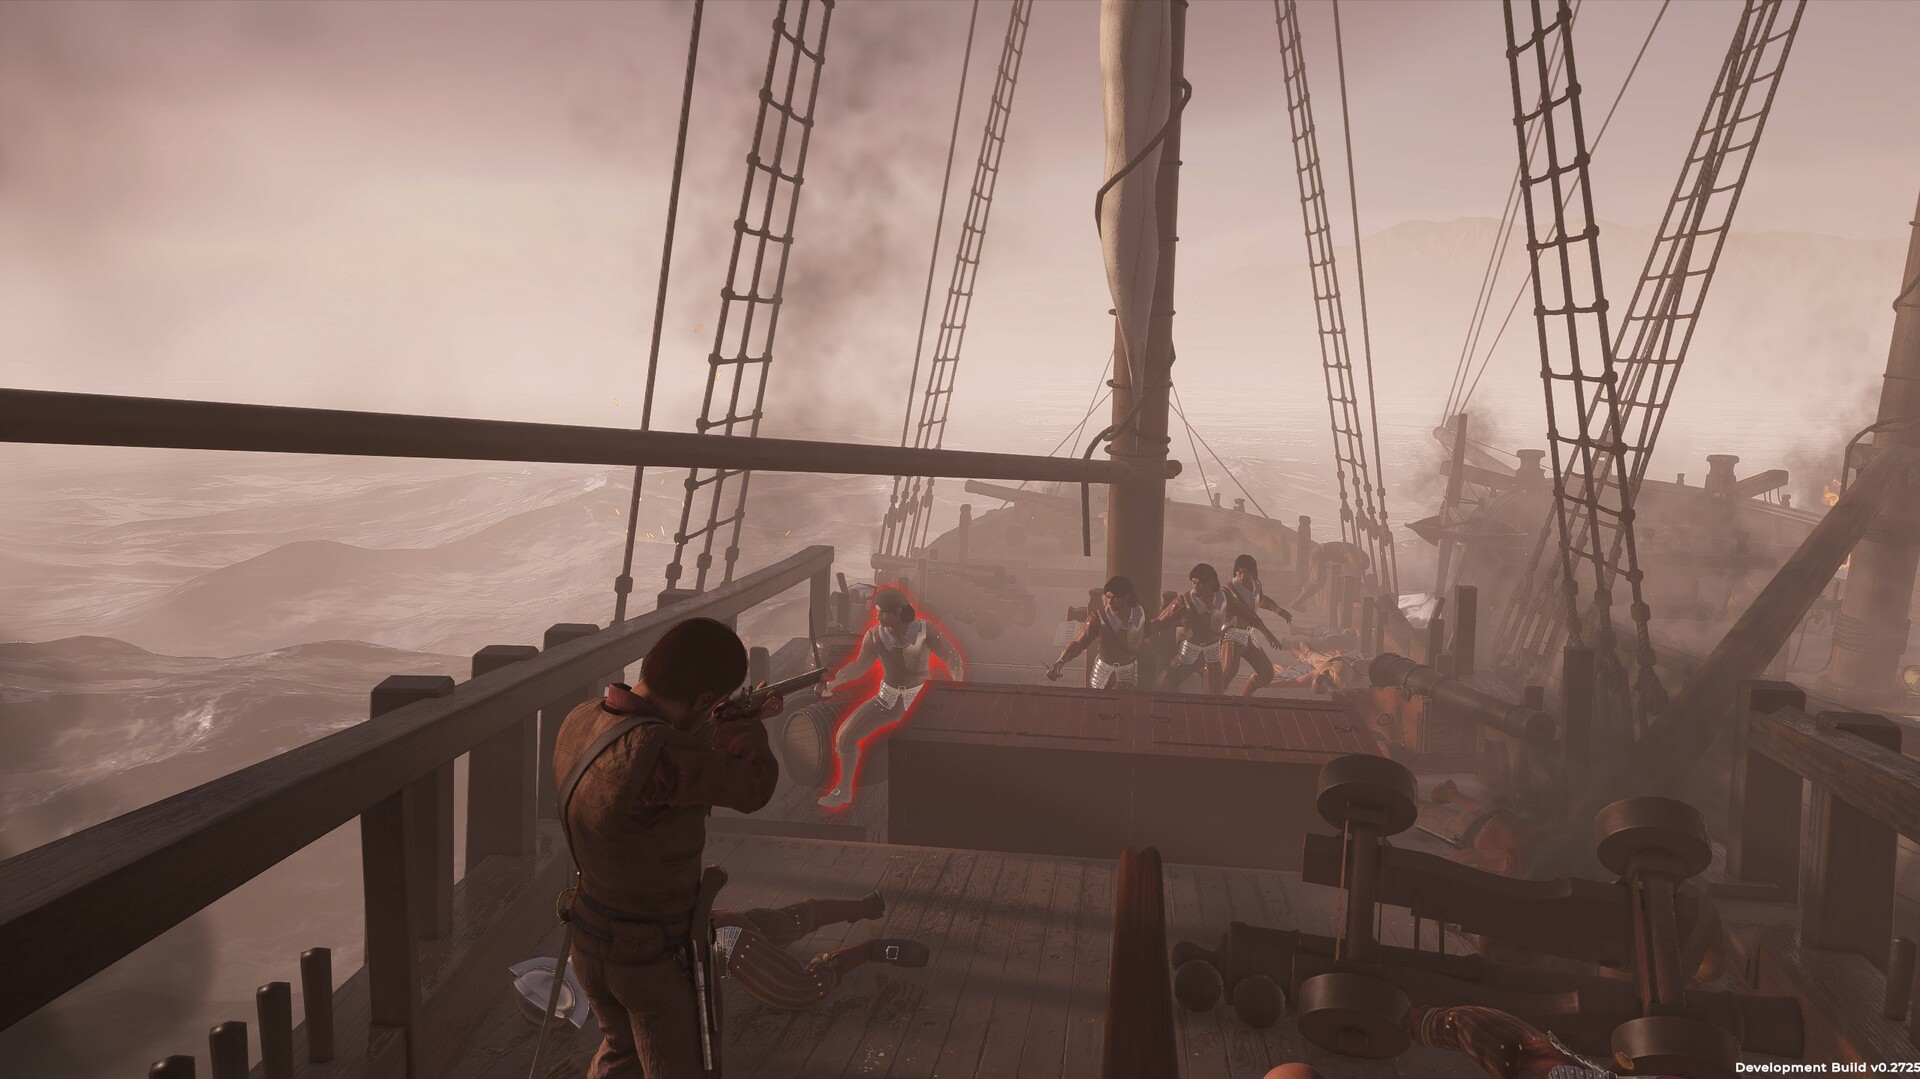 Site oficial do jogo Corsairs Legacy Pirate 2023